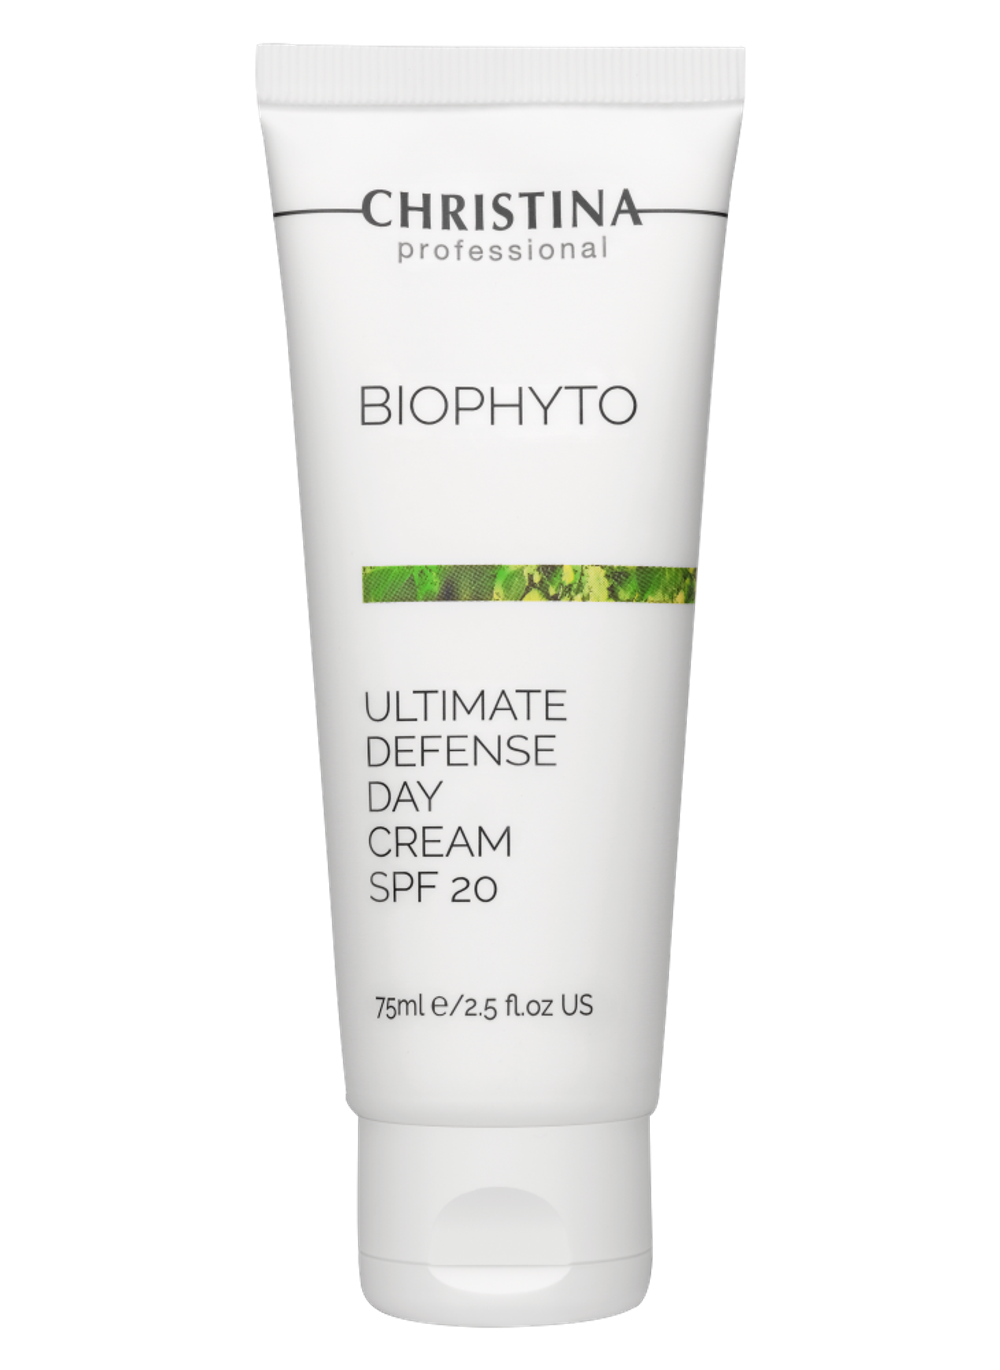 CHRISTINA Bio Phyto Ultimate Defense Day Cream SPF 20